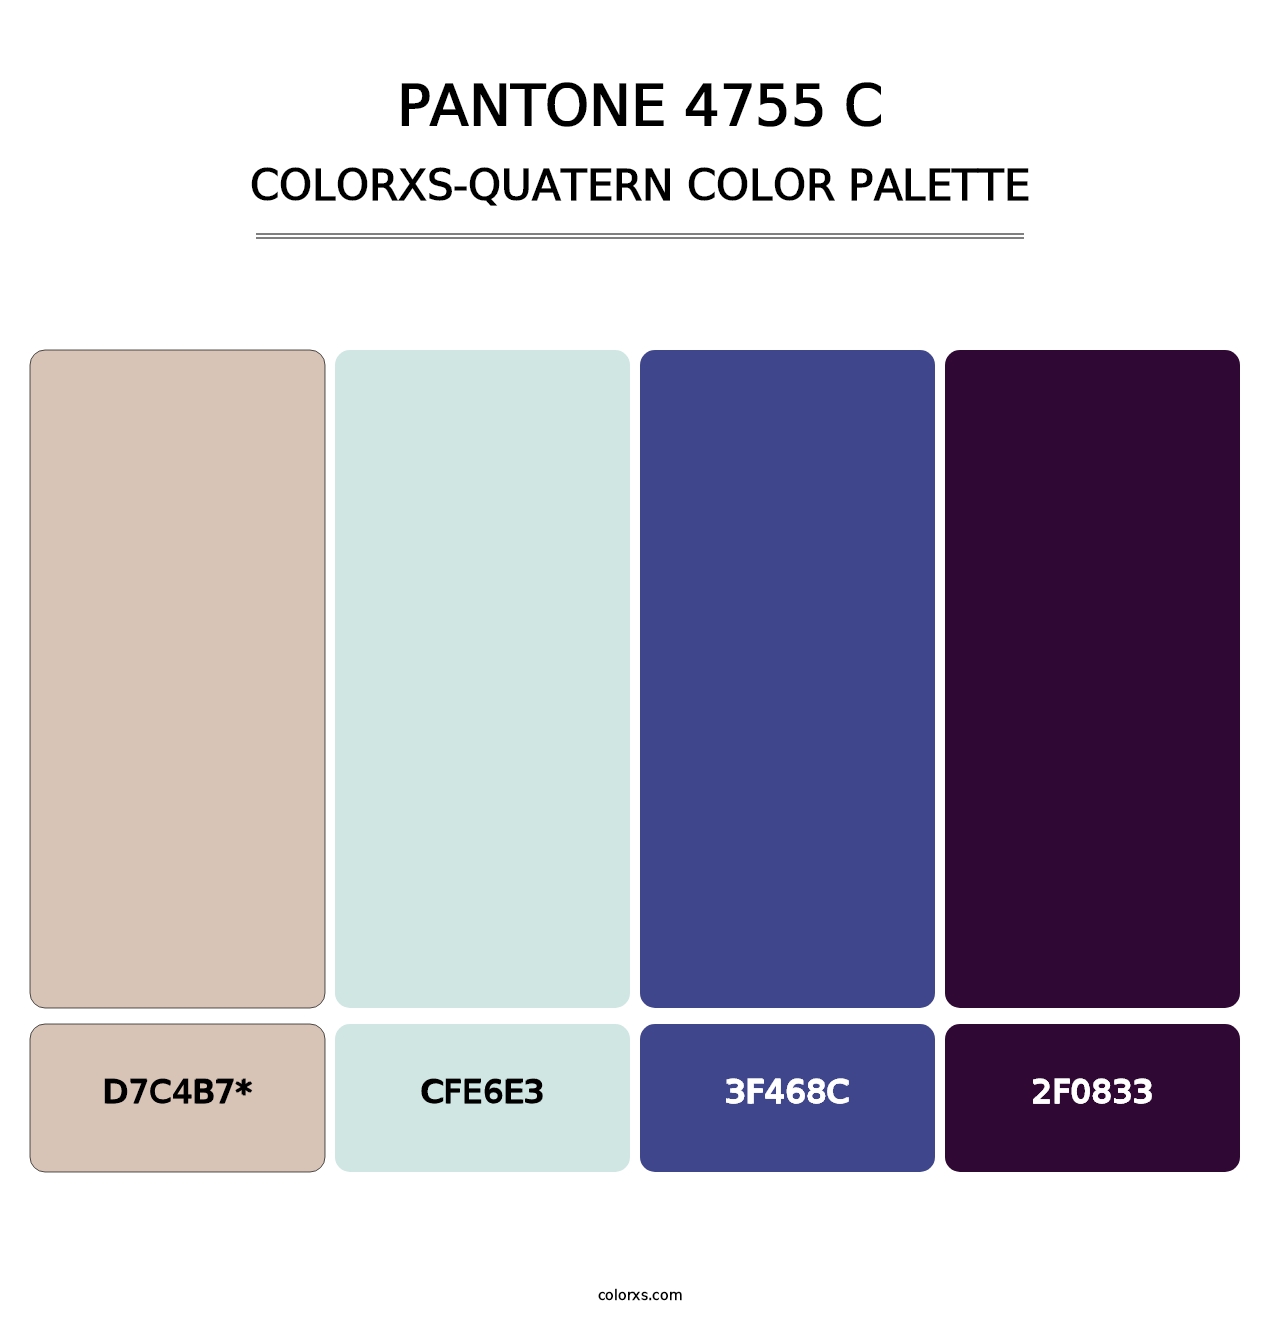 PANTONE 4755 C - Colorxs Quatern Palette